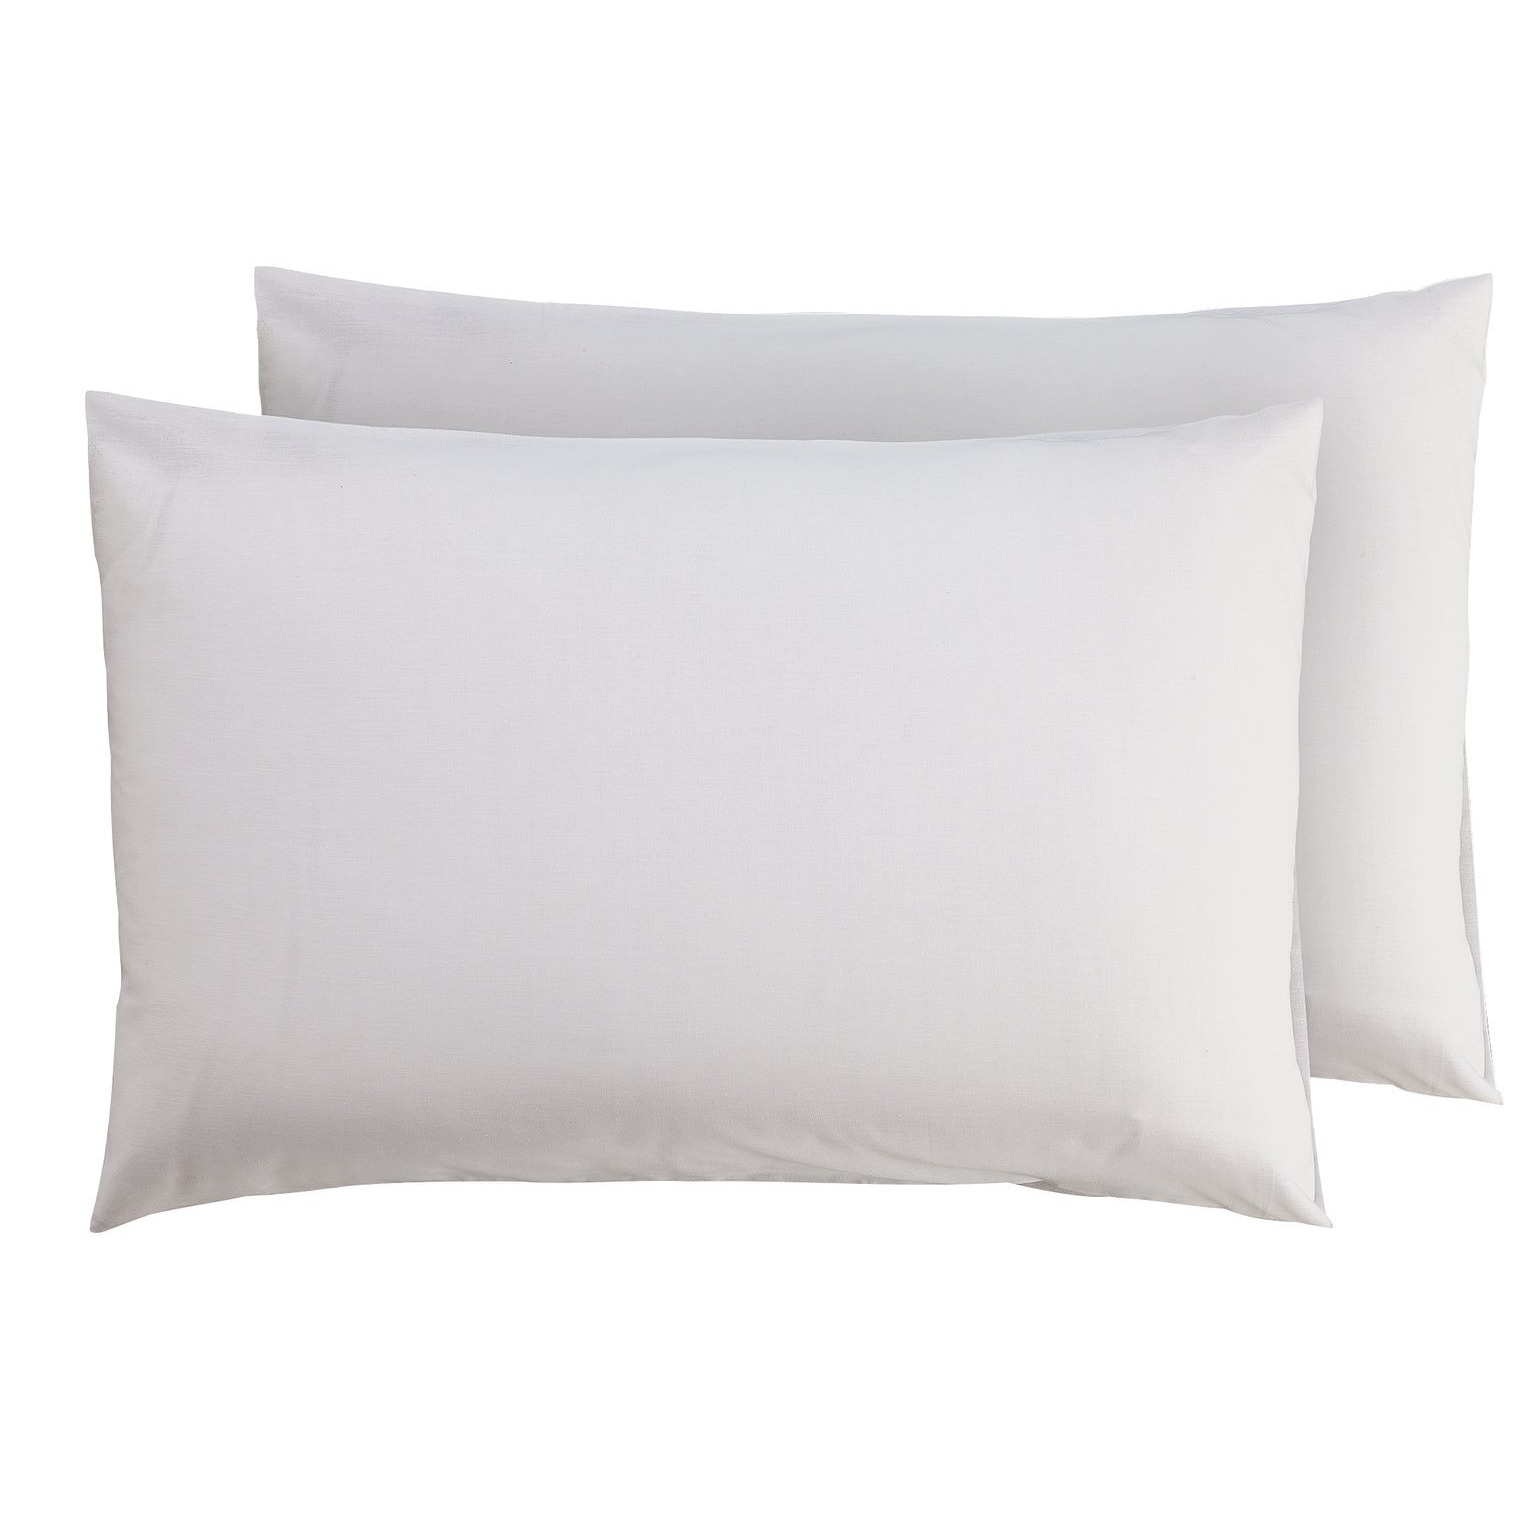 Argos Home Plain Standard Pillowcase Pair - White - image 1